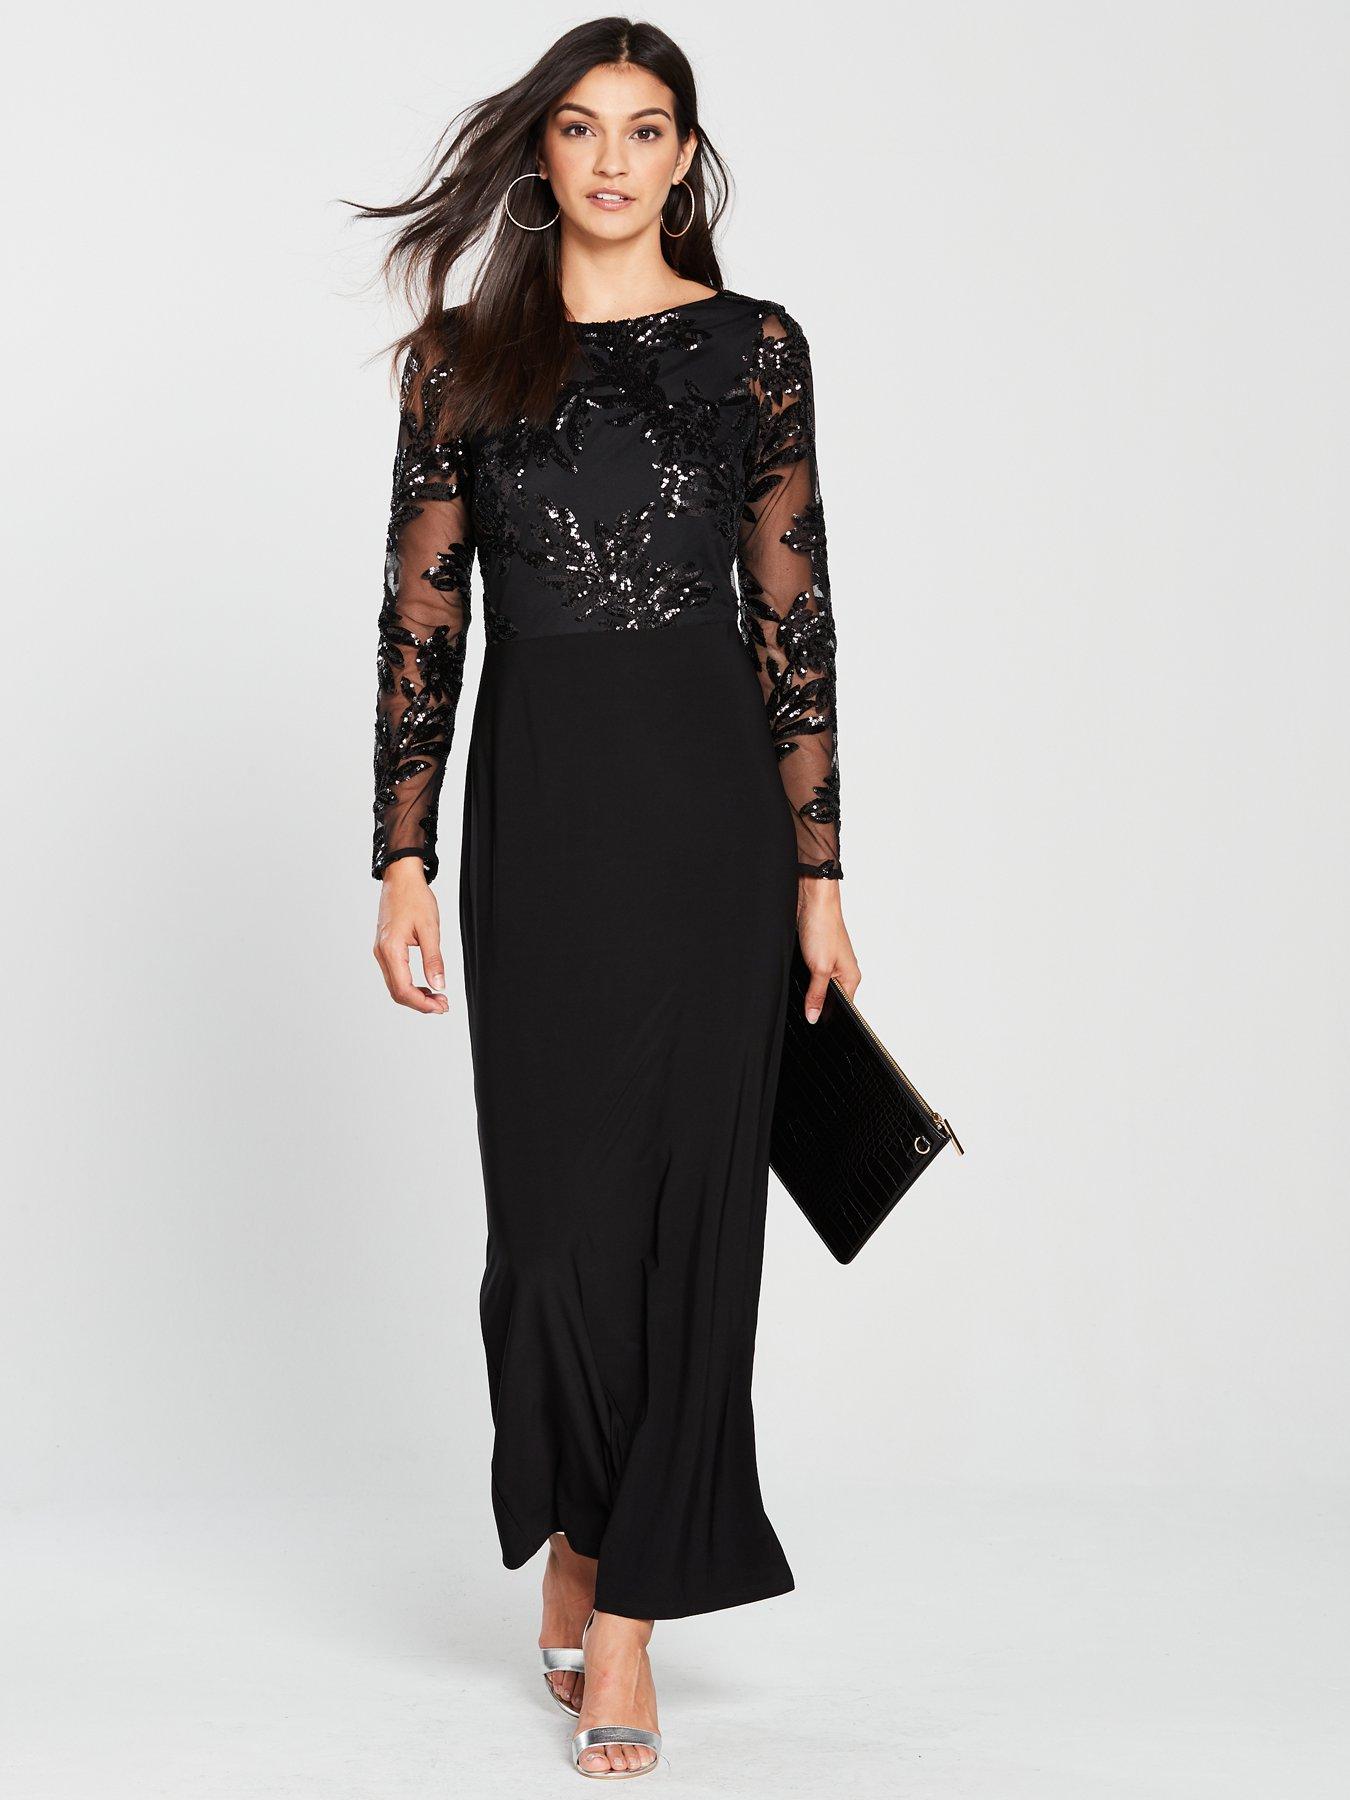 wallis black sequin dress